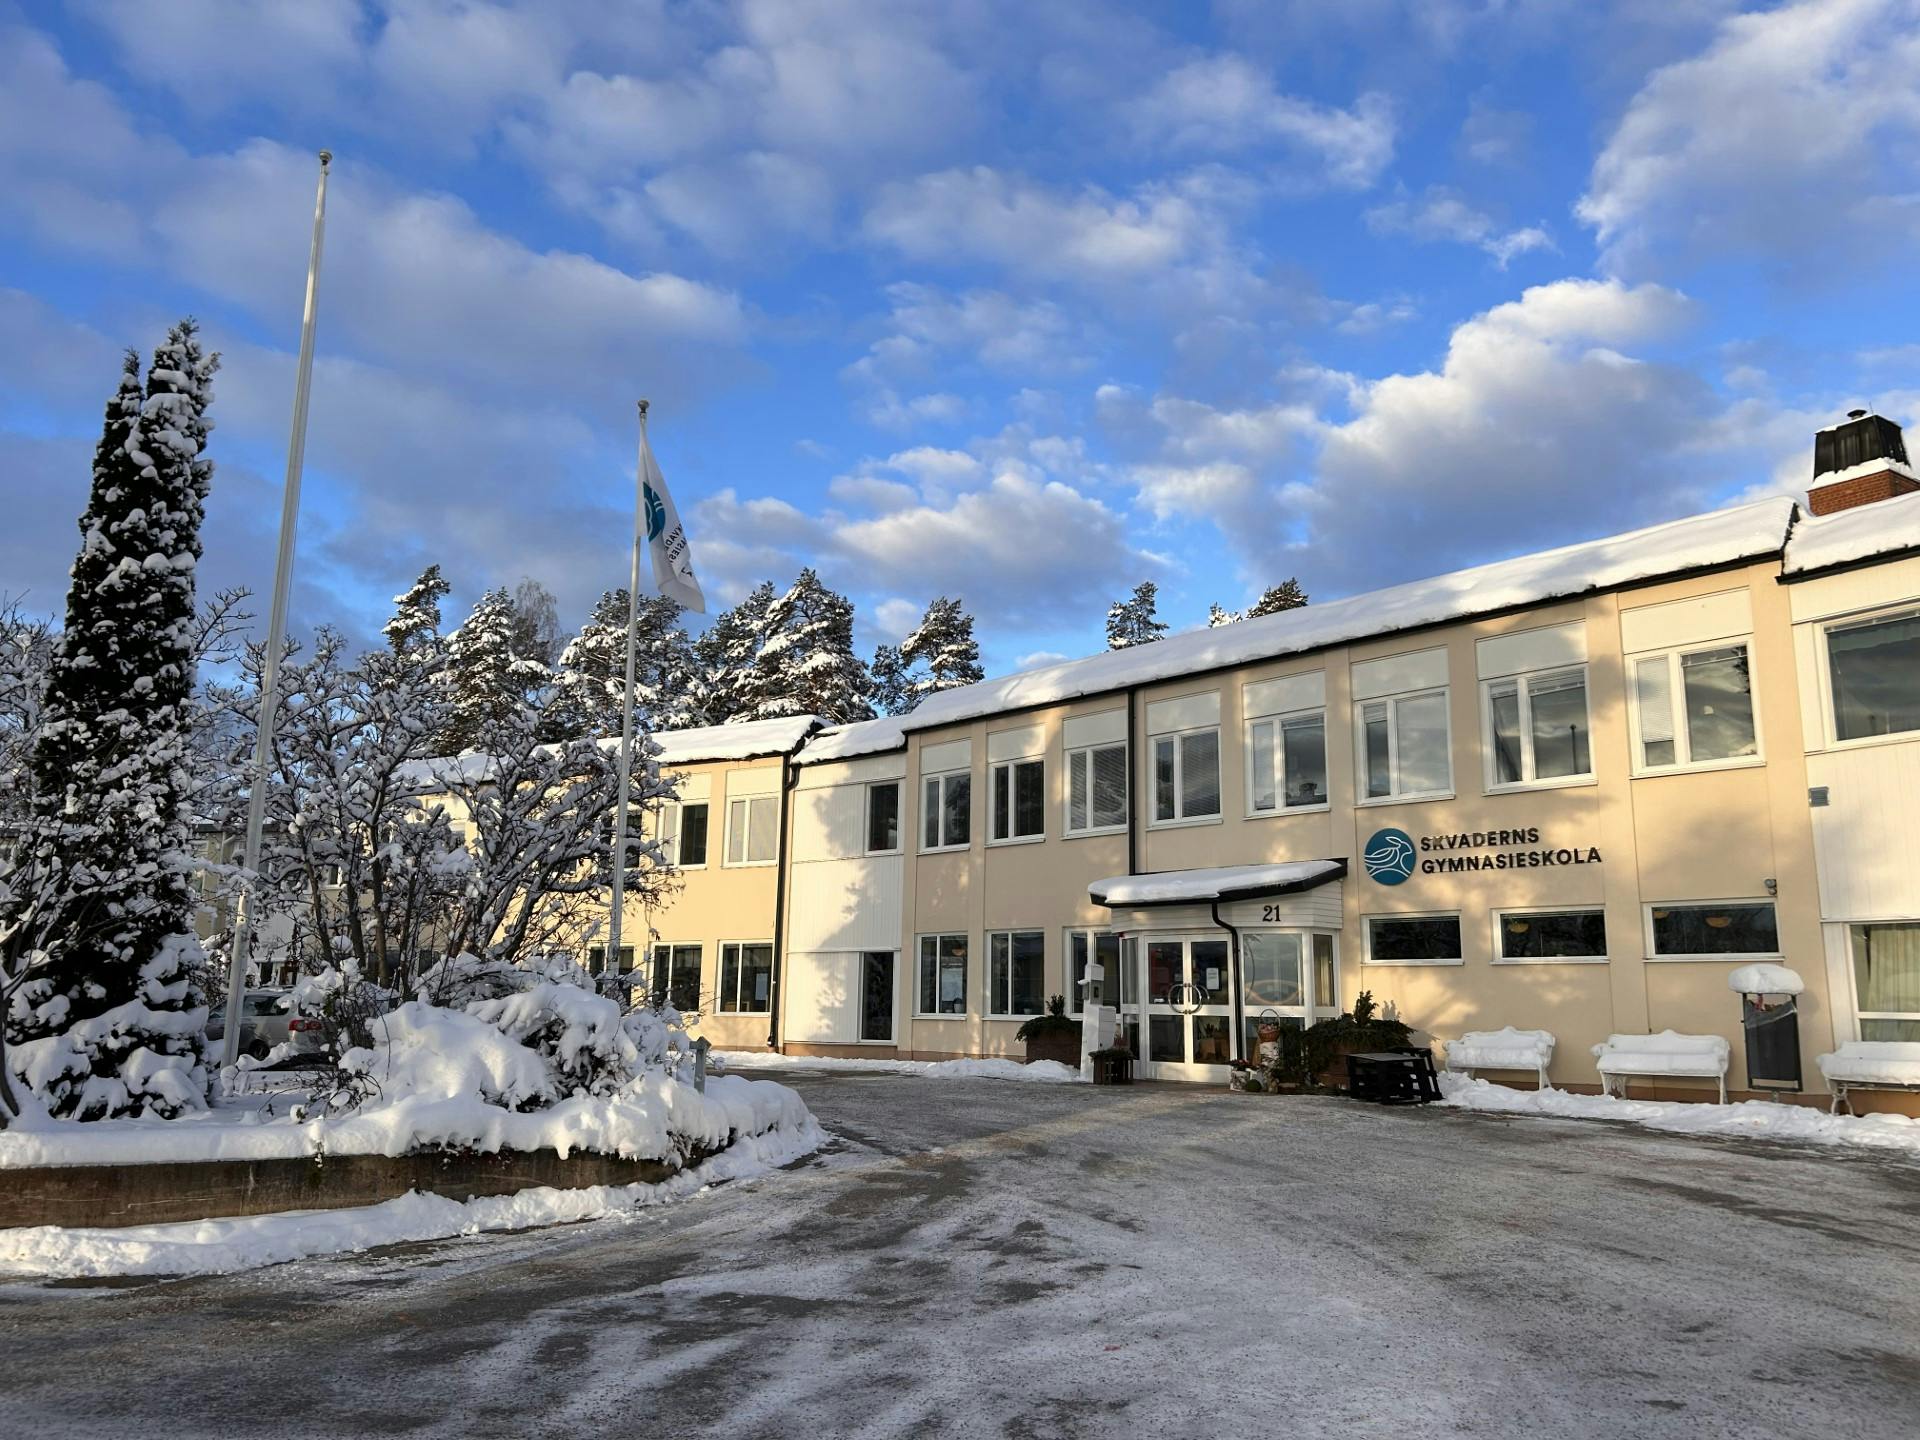 Skvaderns Gymnasieskola i Sundsvall